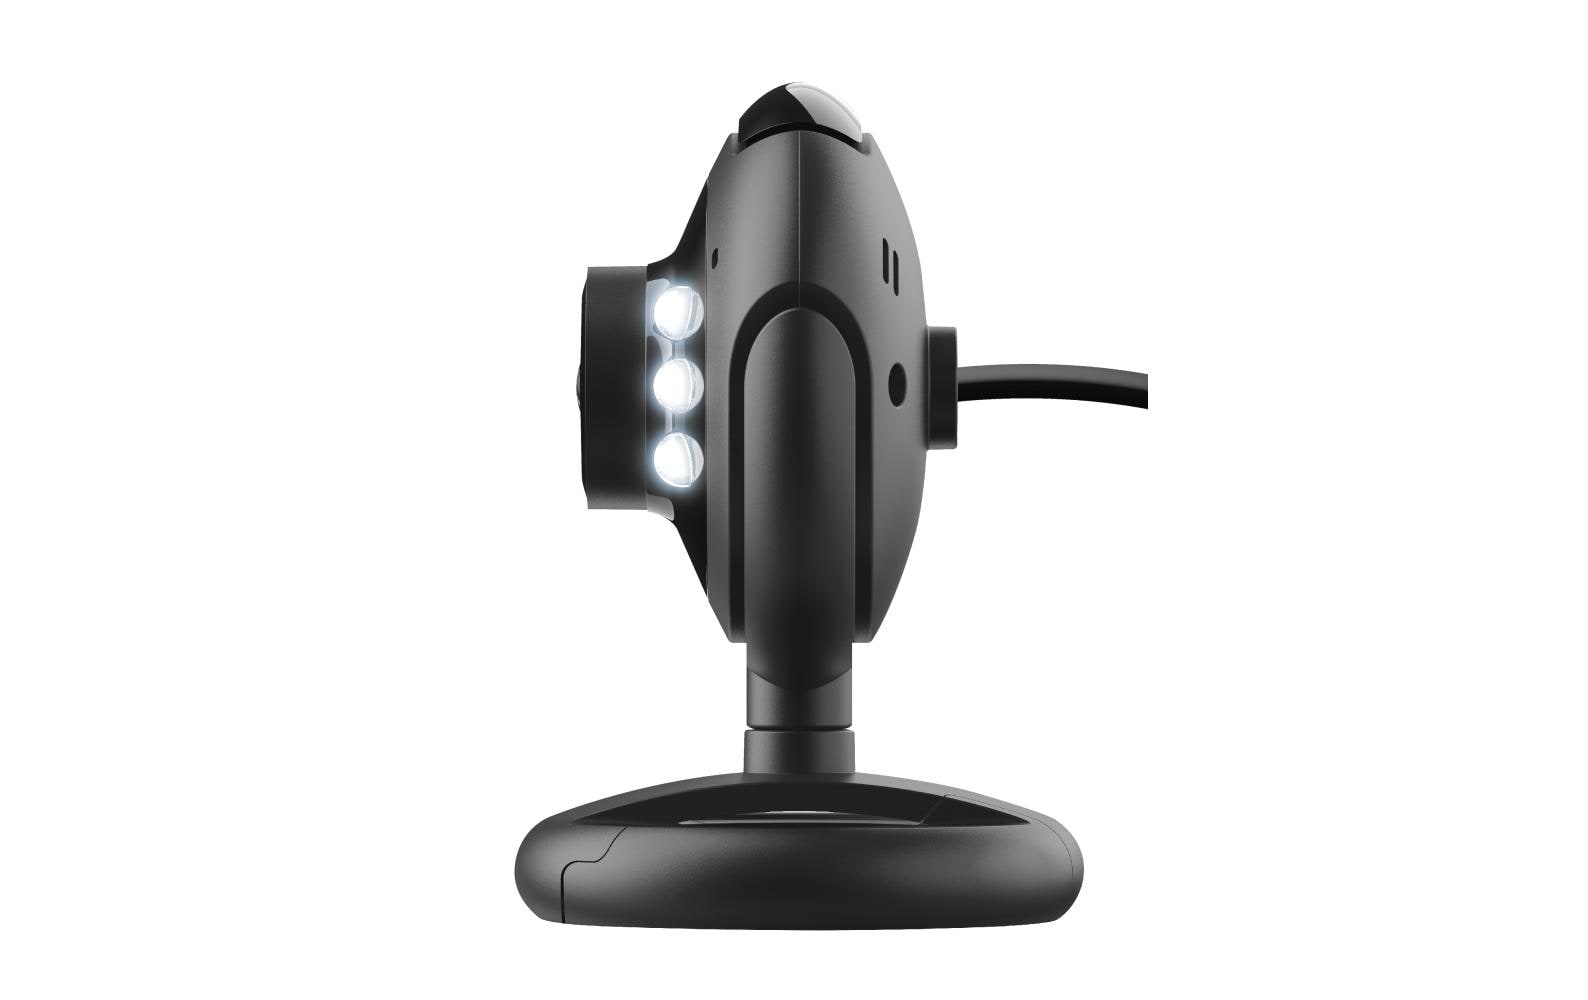 Trust Webcam Spotlight Pro